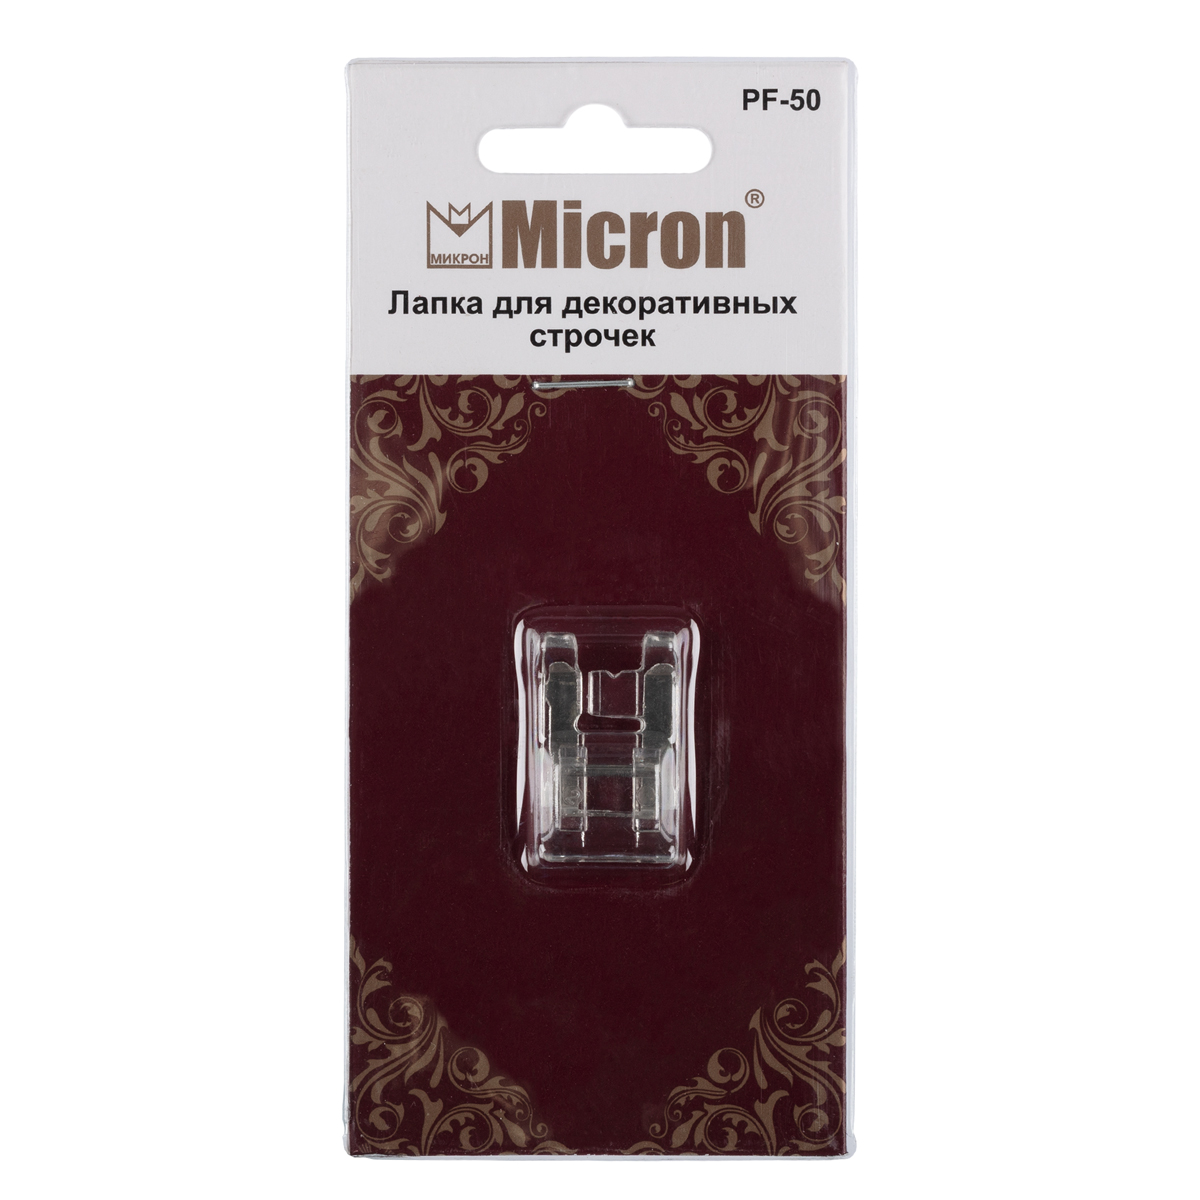 Micron PF-50 Лапка для выполнения декоративных строчек . Фото 1.